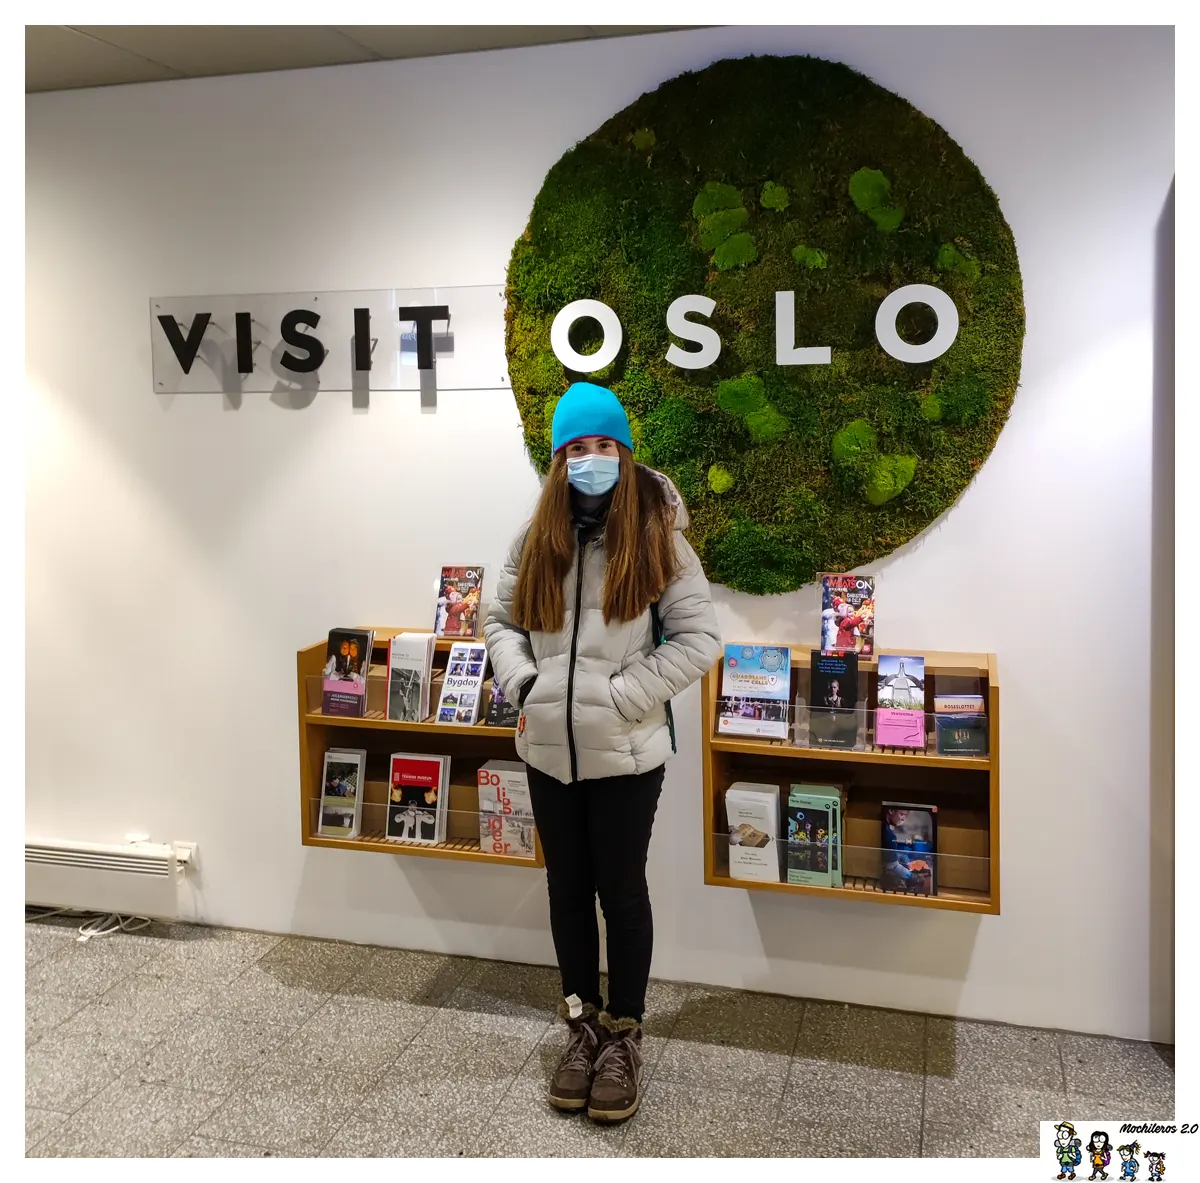 La Oslo Pass se adquiere en Visit Oslo